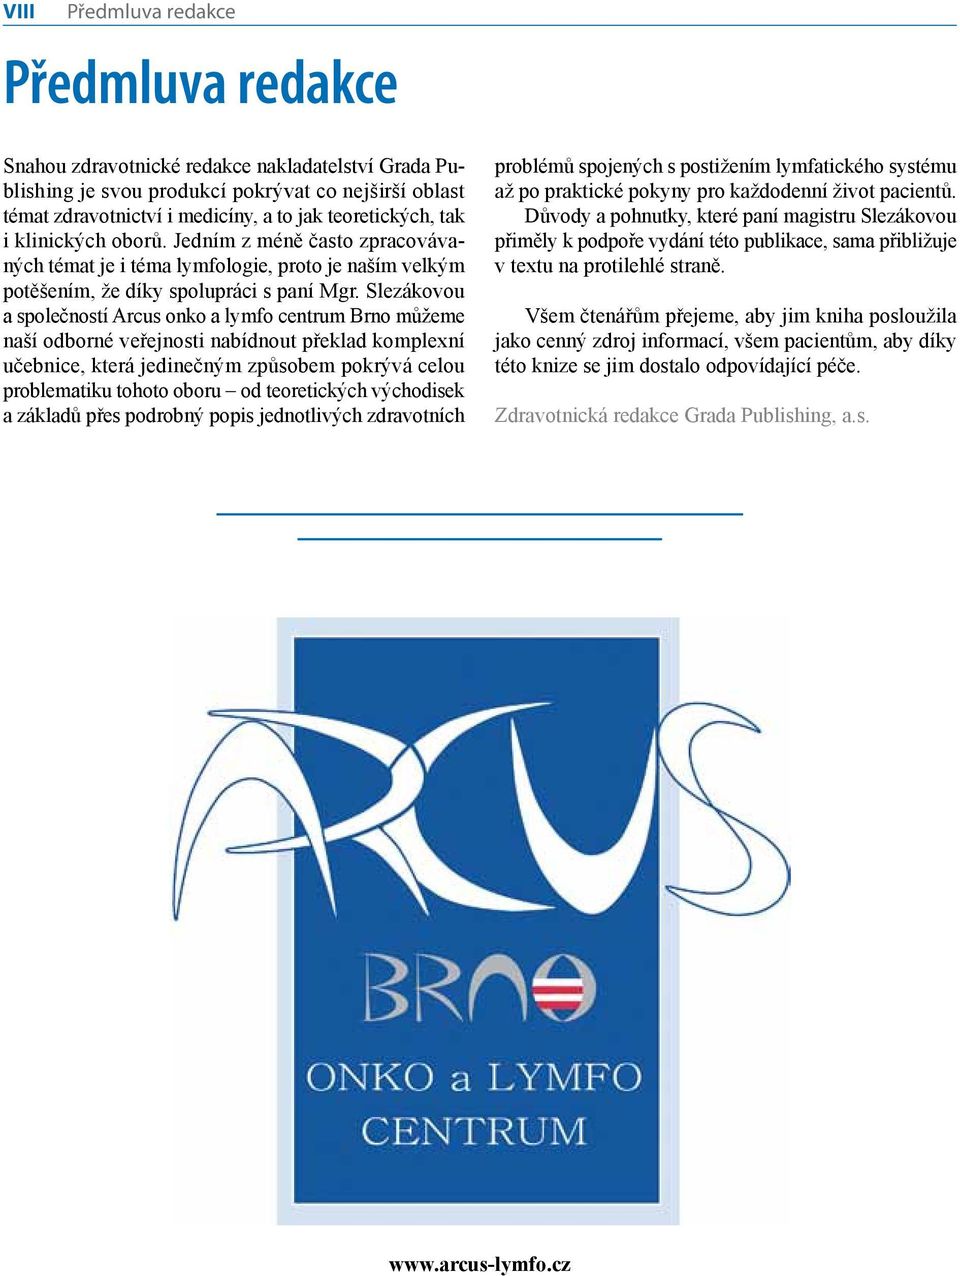 Slezákovou a společností Arcus onko a lymfo centrum Brno můžeme naší odborné veřejnosti nabídnout překlad komplexní učebnice, která jedinečným způsobem pokrývá celou problematiku tohoto oboru od